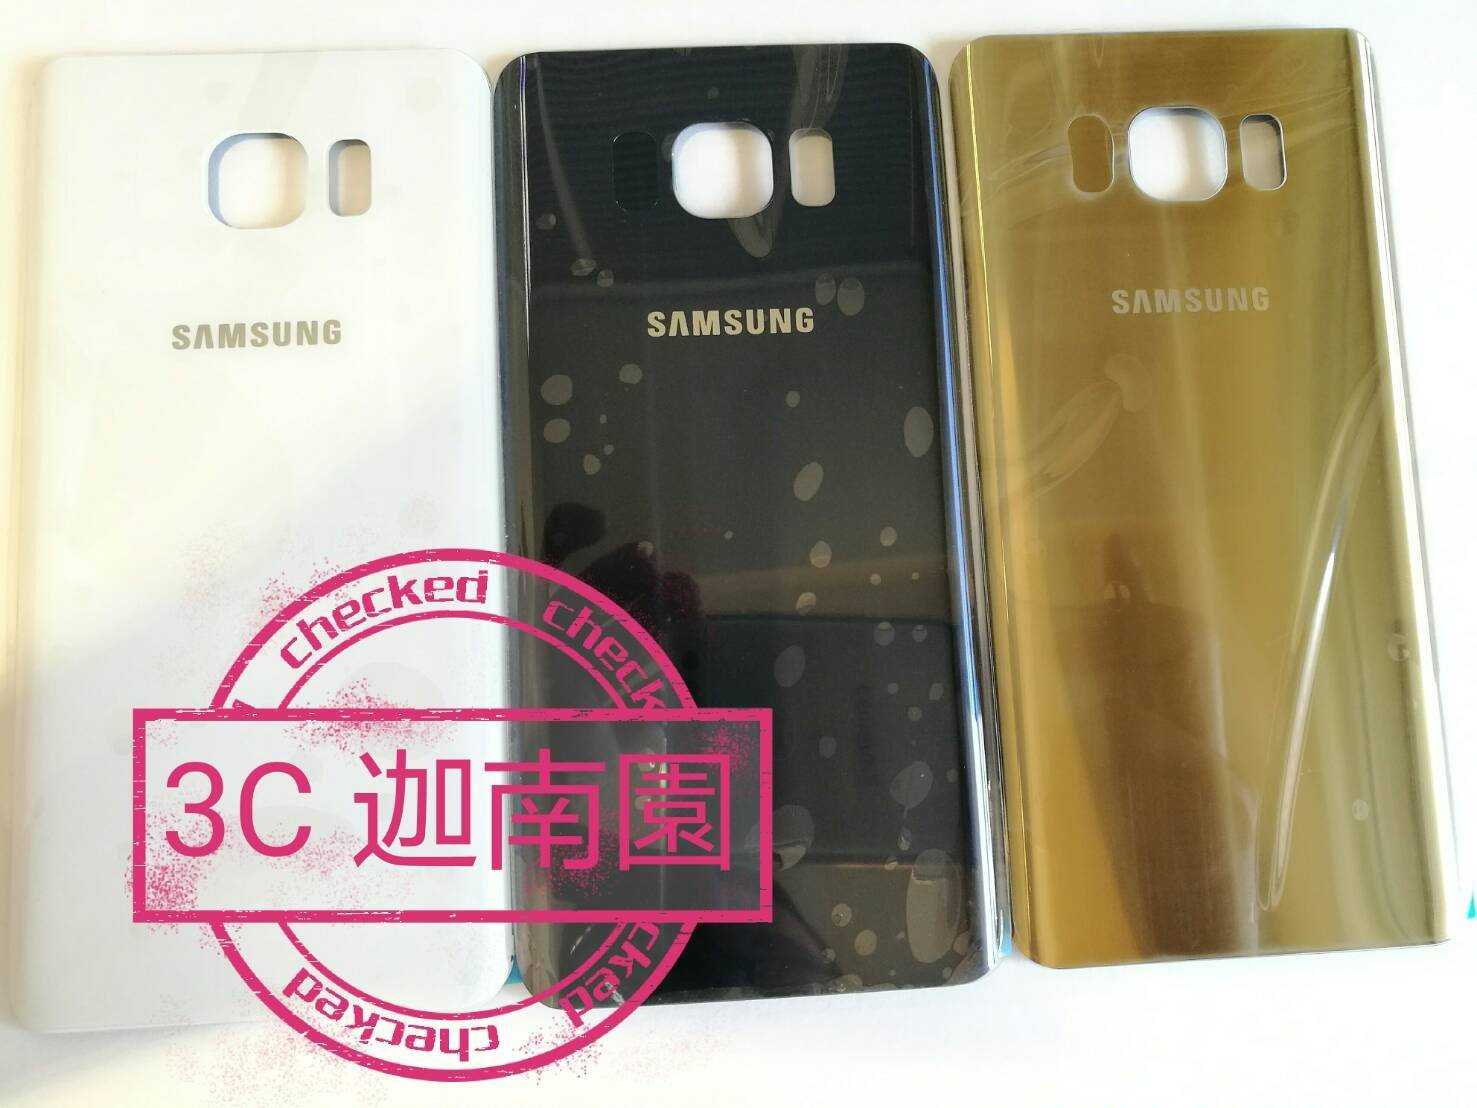 【保固一年】Samsung Galaxy Note5 原廠背蓋 原廠電池蓋 背蓋 後蓋 電池背蓋 Note 5